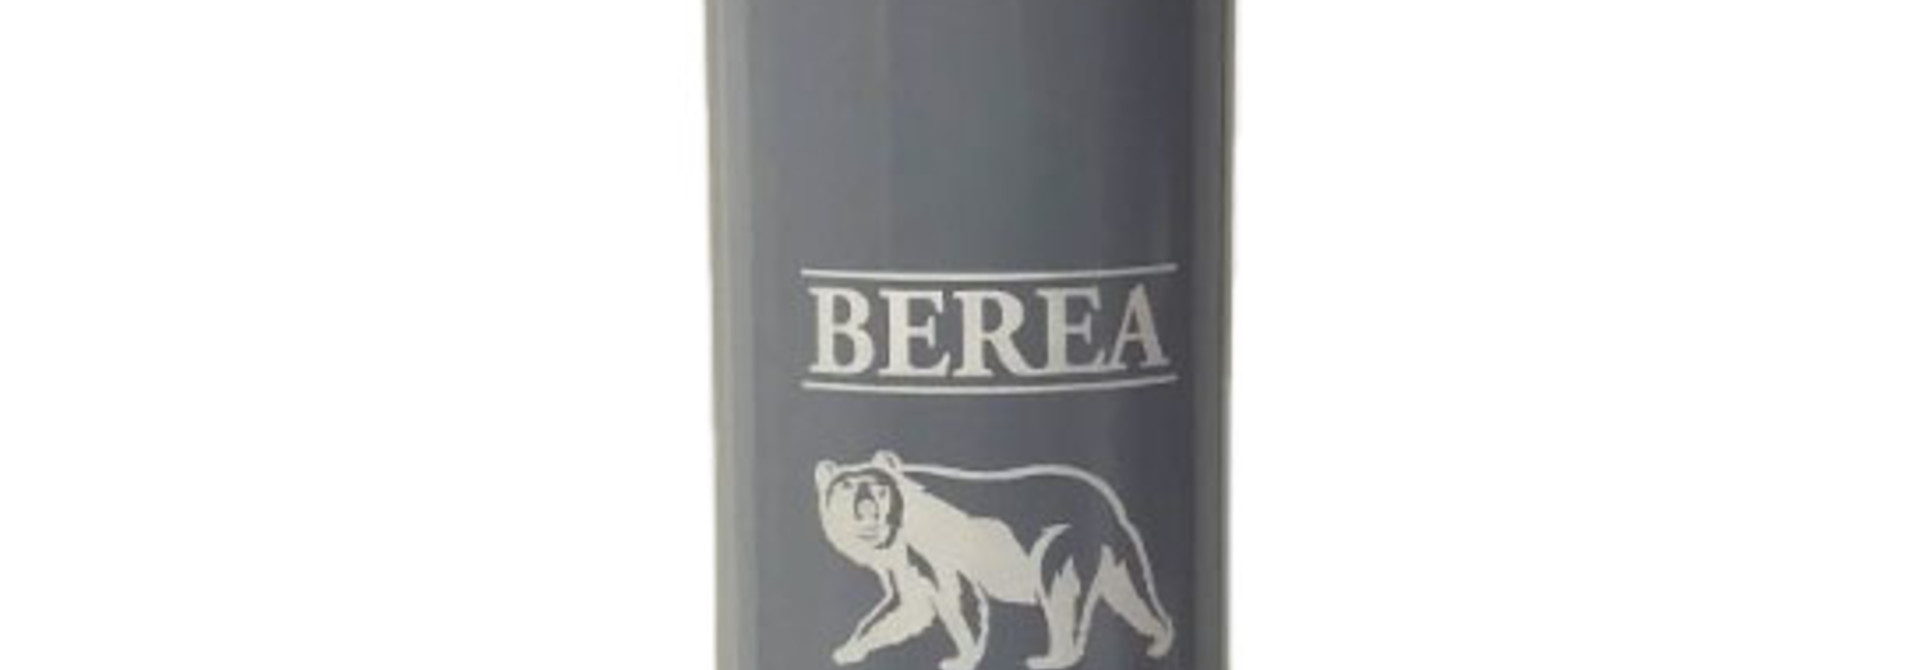 Berea College Bear Bottle